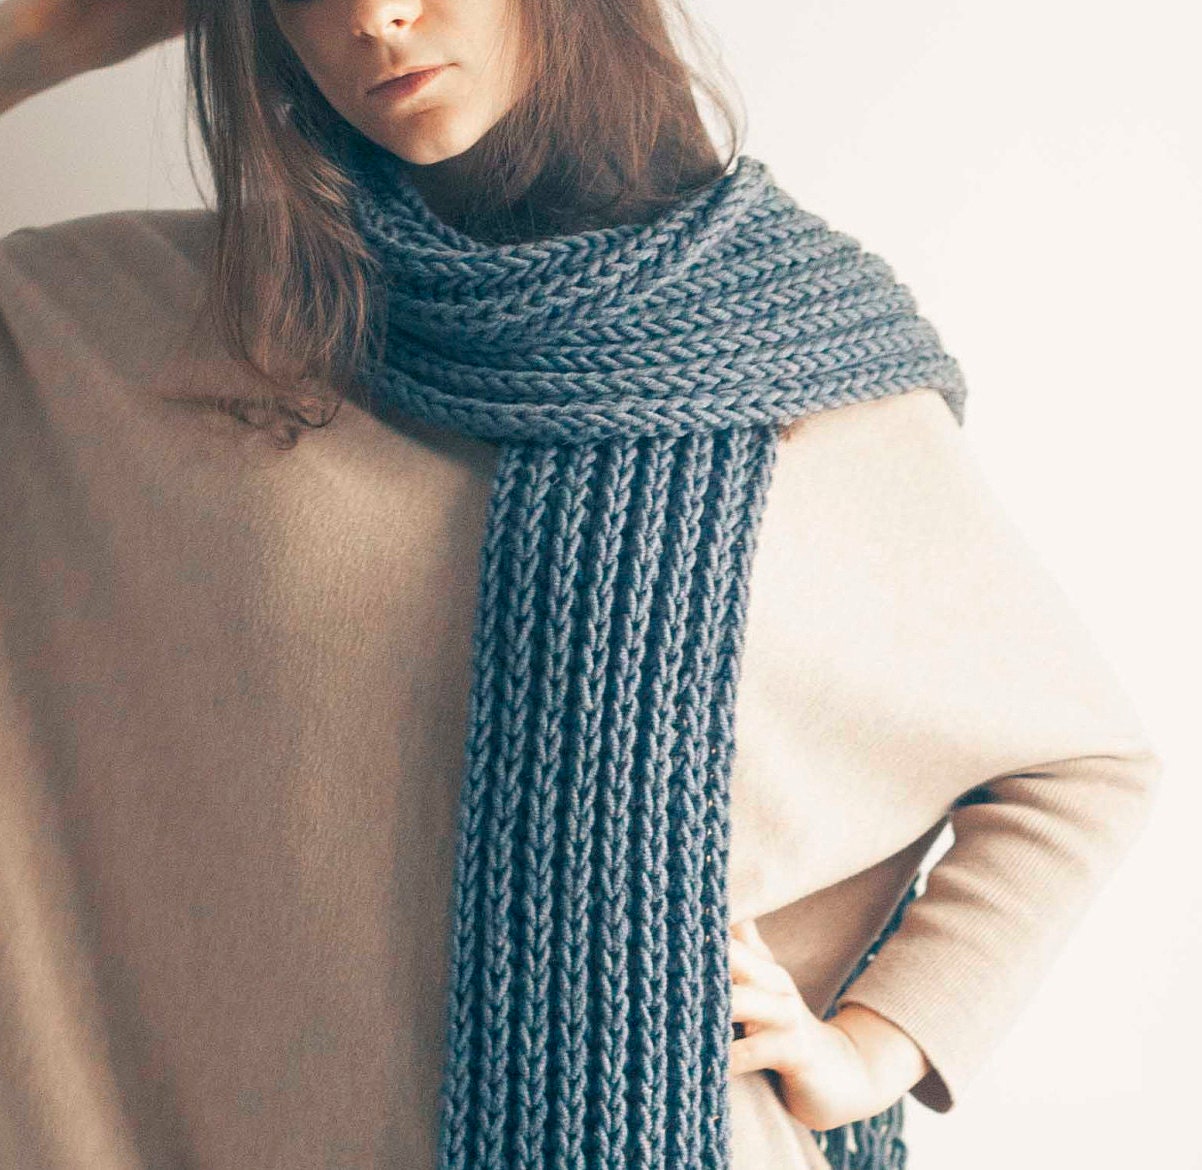 Knit scarf pattern Video tutorial Beginner knitting patterns | Etsy